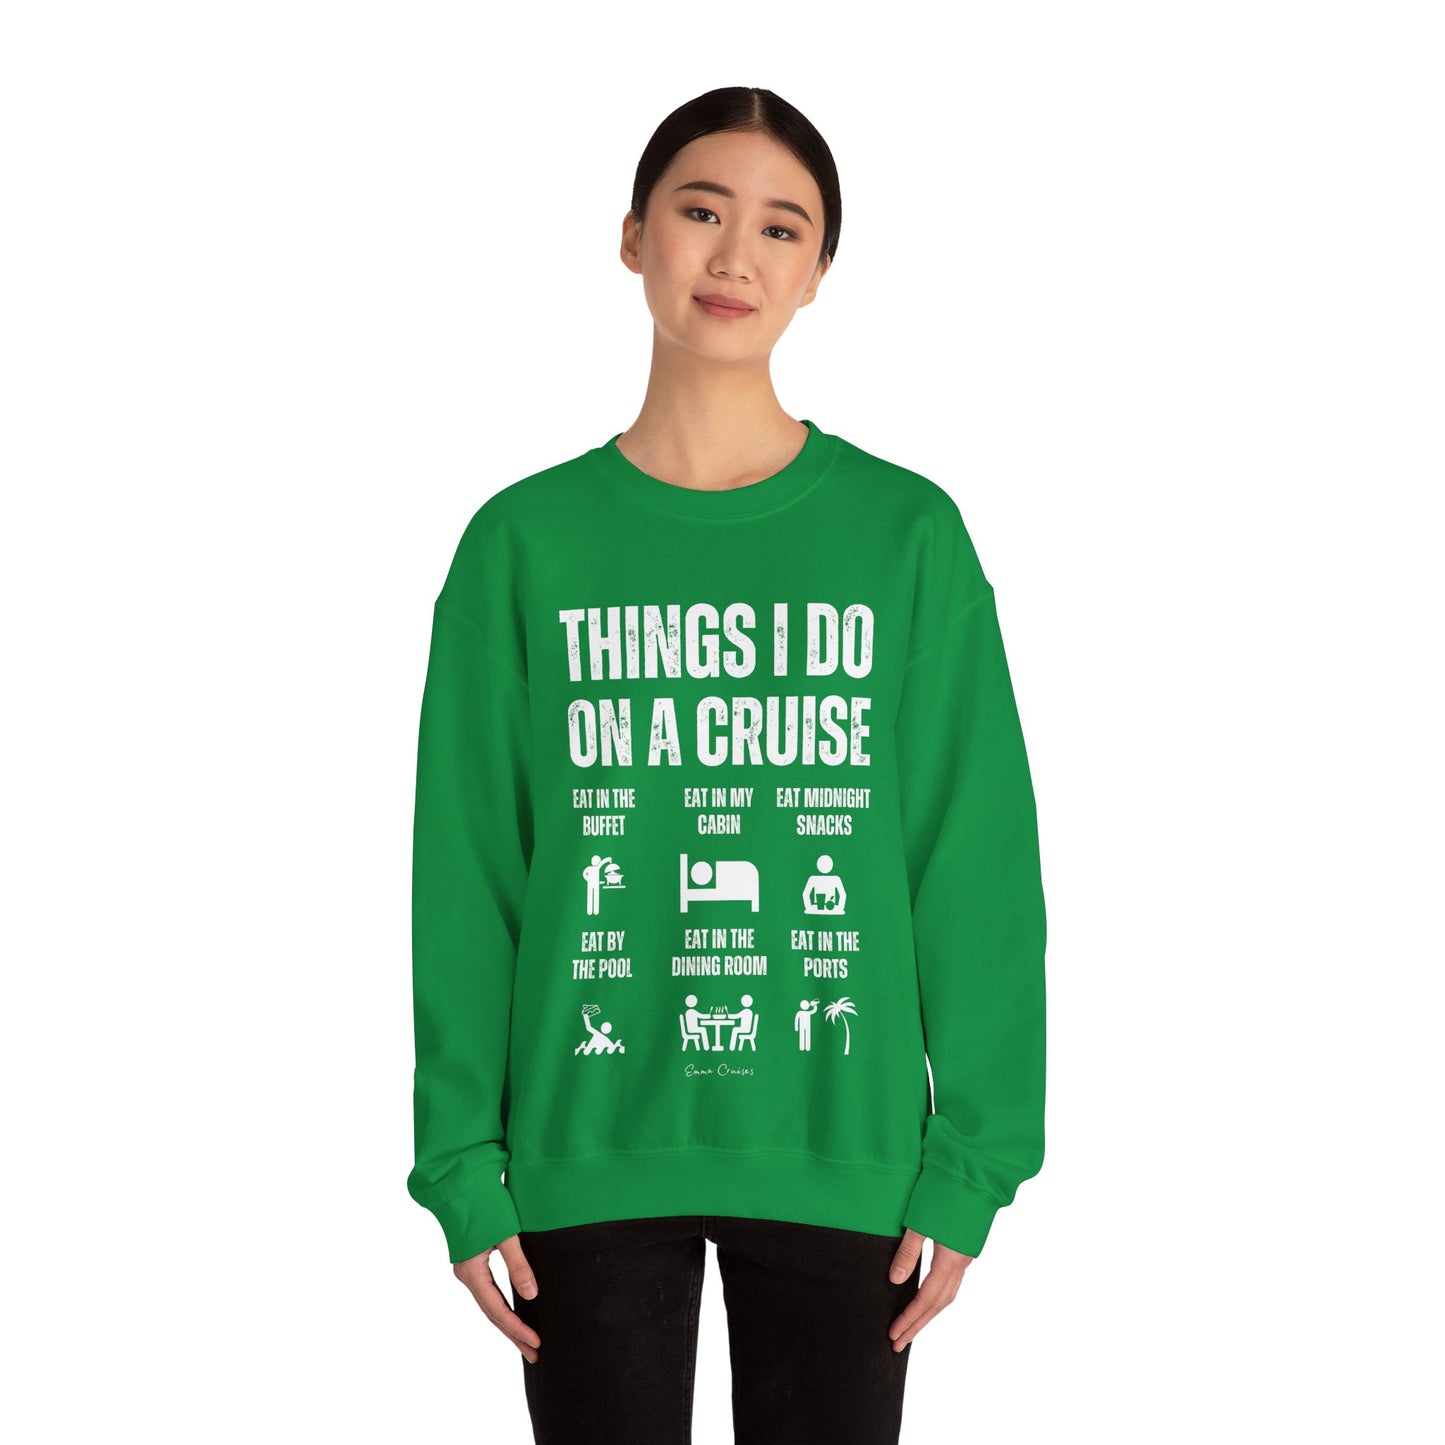 Things I Do on a Cruise - UNISEX Crewneck Sweatshirt